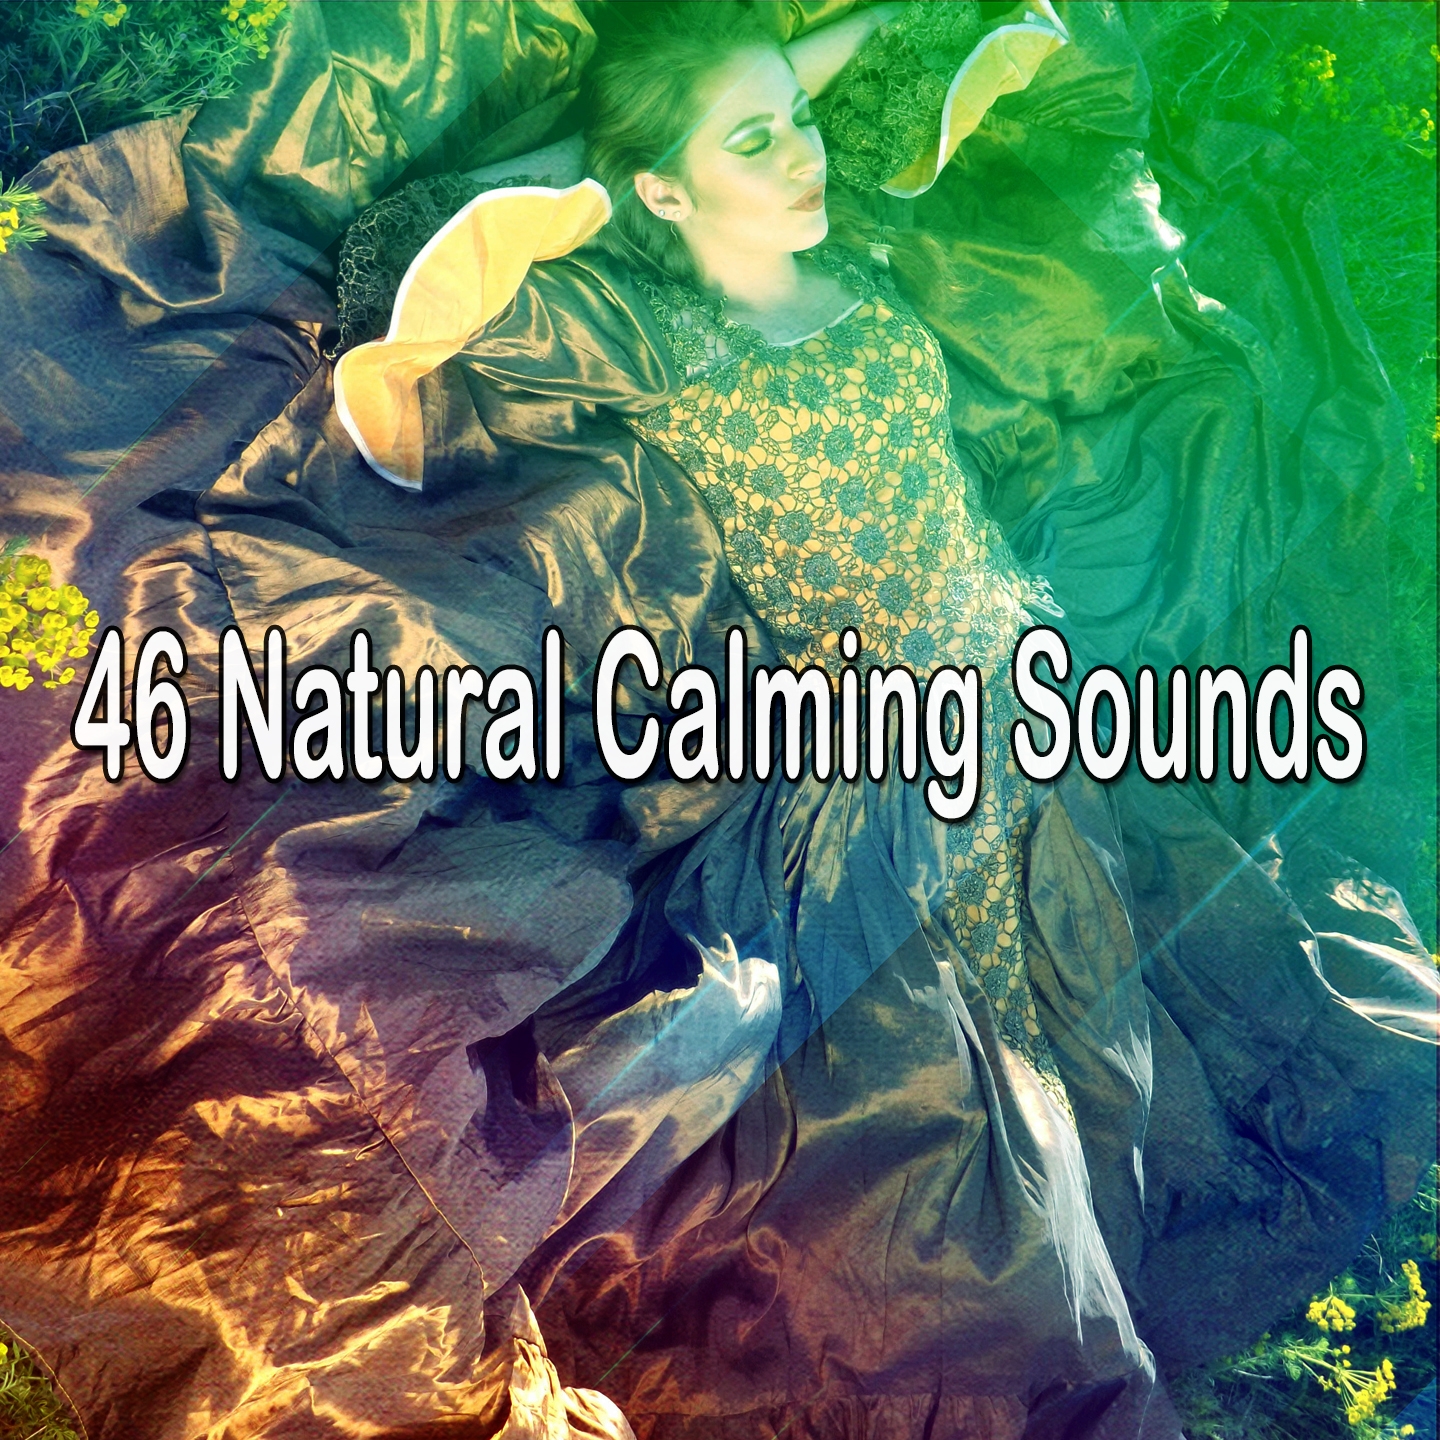 46 Natural Calming Sounds